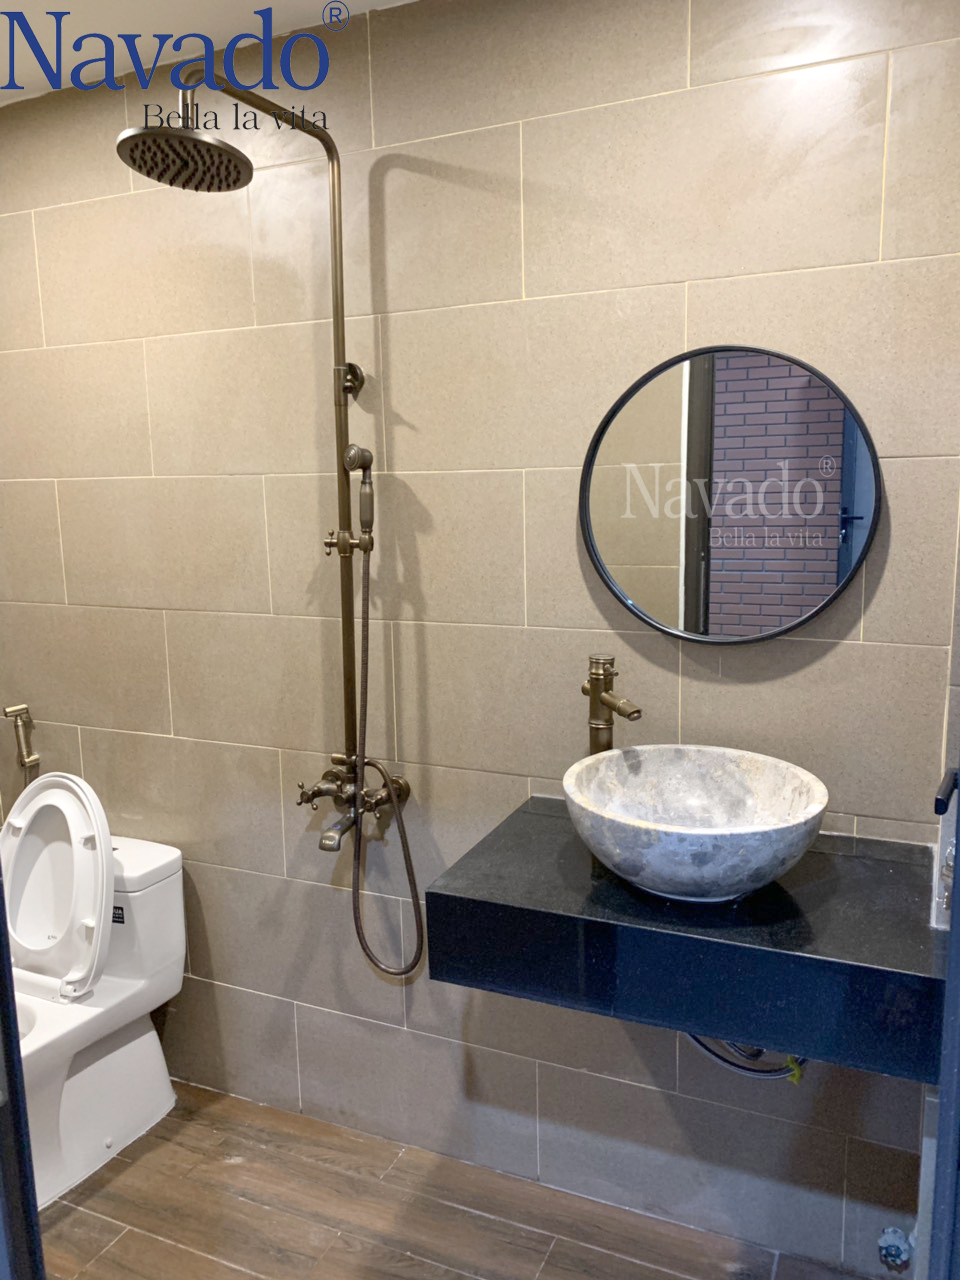 Gương nhà tắm giúp thu hút ánh sáng, cải thiện không gian.